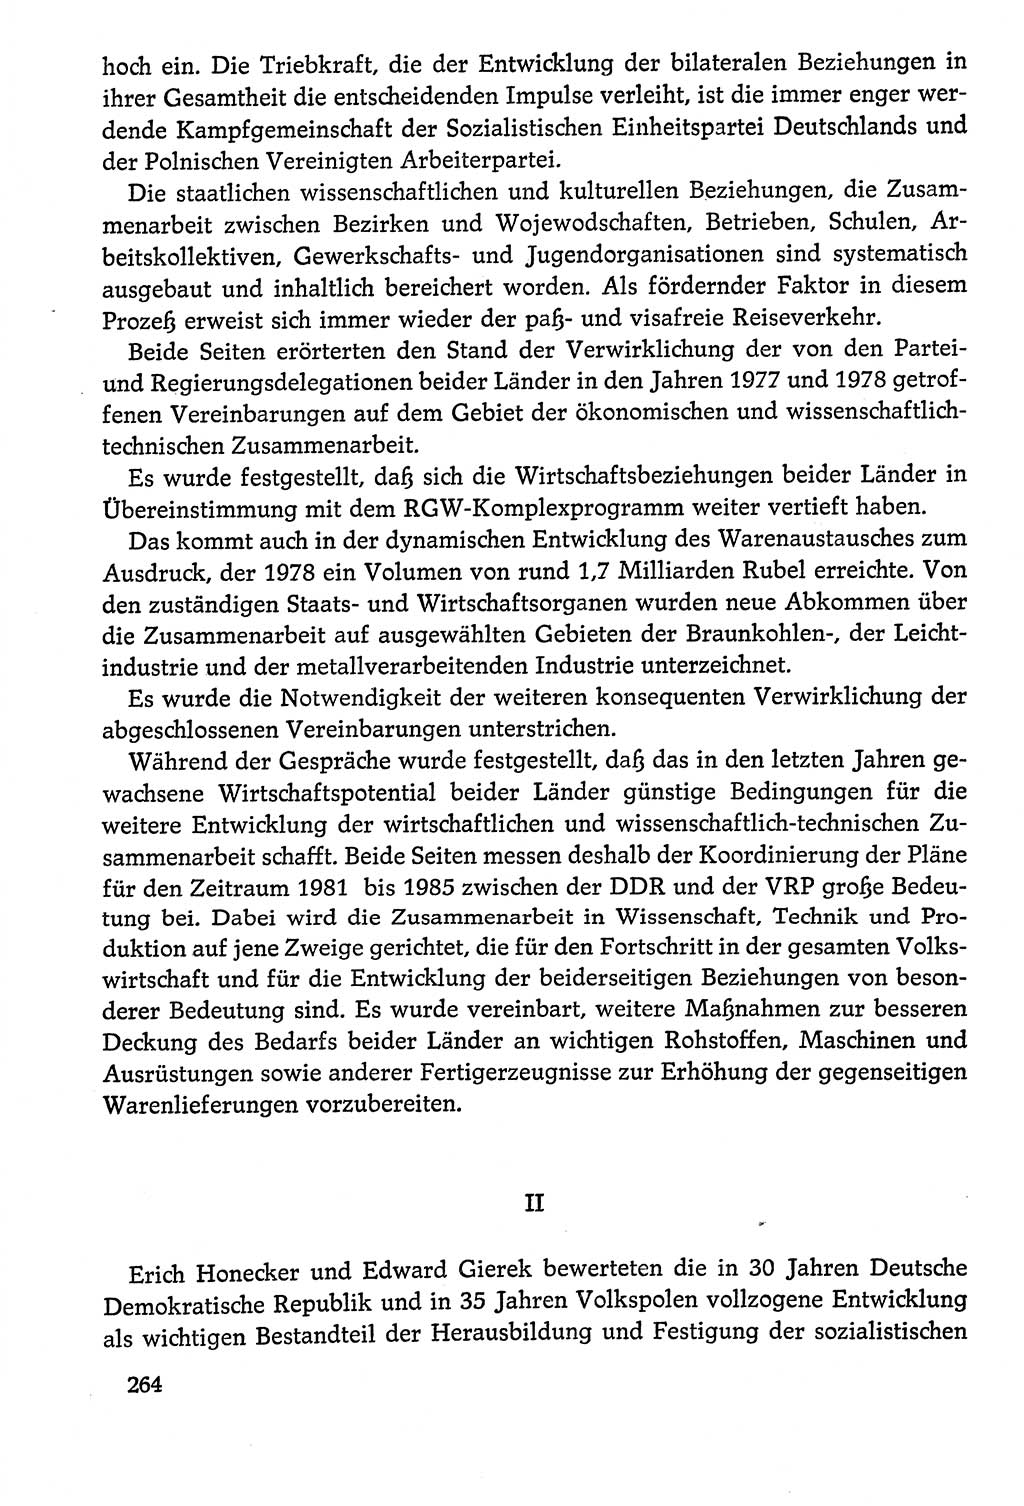 Dokumente der Sozialistischen Einheitspartei Deutschlands (SED) [Deutsche Demokratische Republik (DDR)] 1978-1979, Seite 264 (Dok. SED DDR 1978-1979, S. 264)